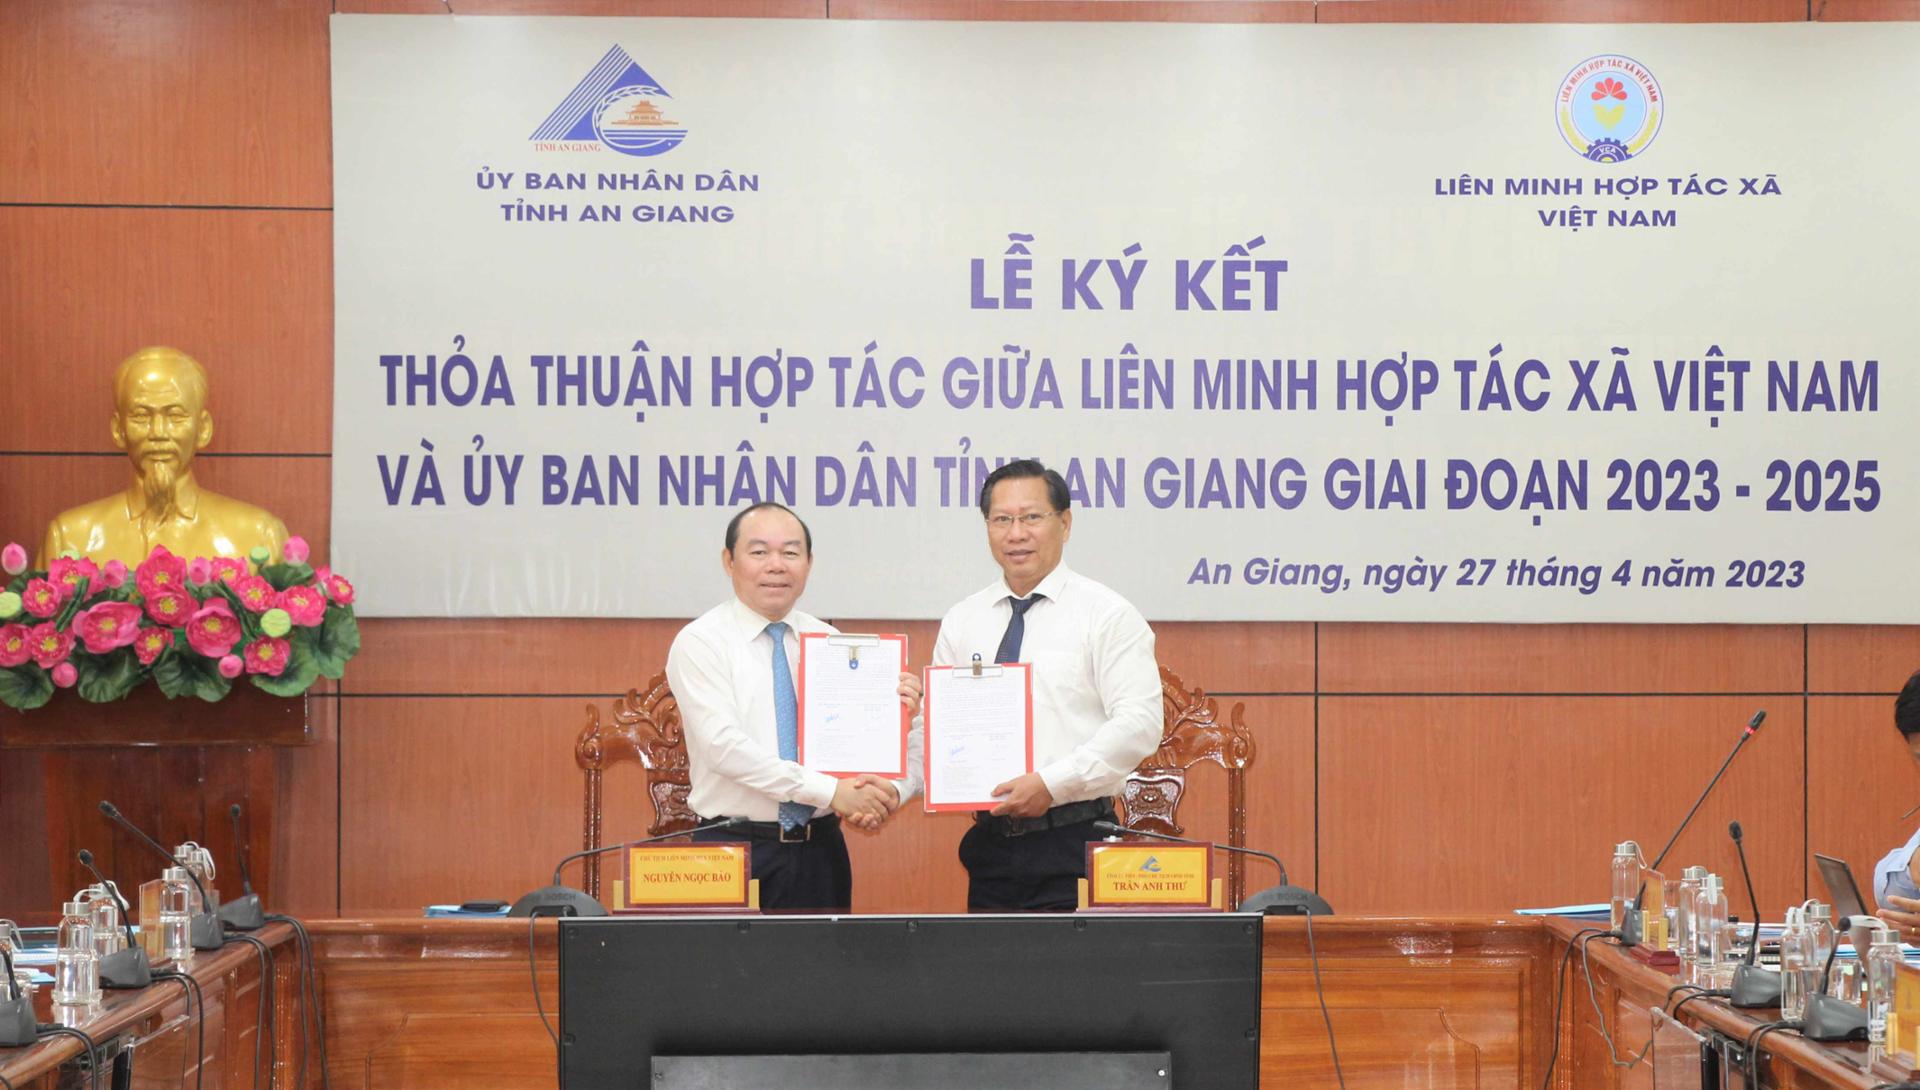 Chủ tịch Liên minh Hợp tác xã Việt Nam Nguyễn Ngọc Bảo và Phó Chủ tịch UBND tỉnh Trần Anh Thư ký kết thỏa thuận hợp tác